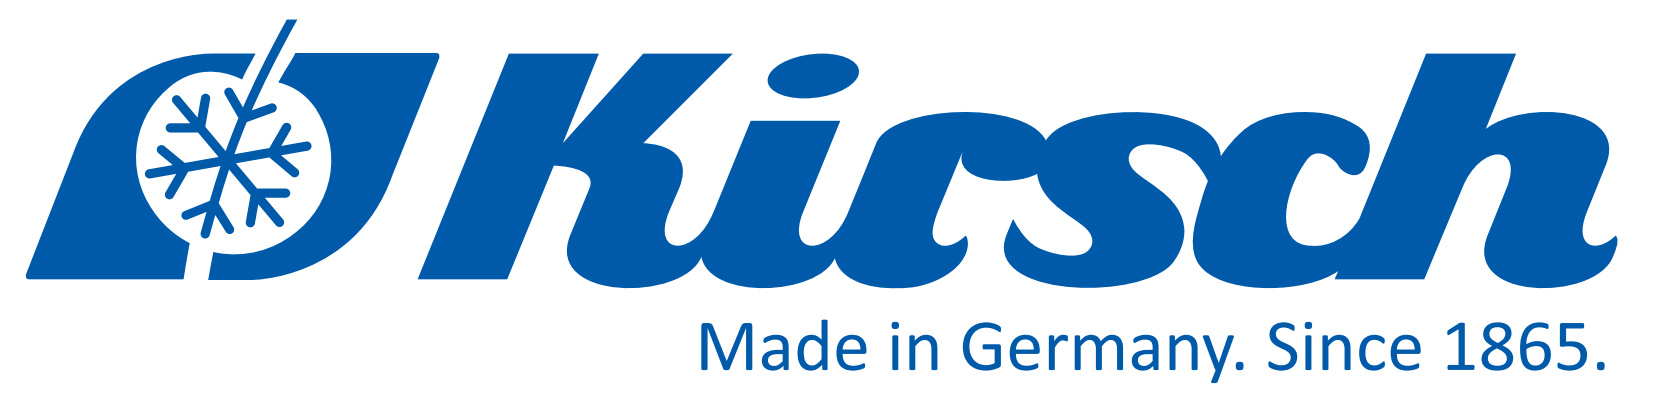 Philip Kirsch GmbH